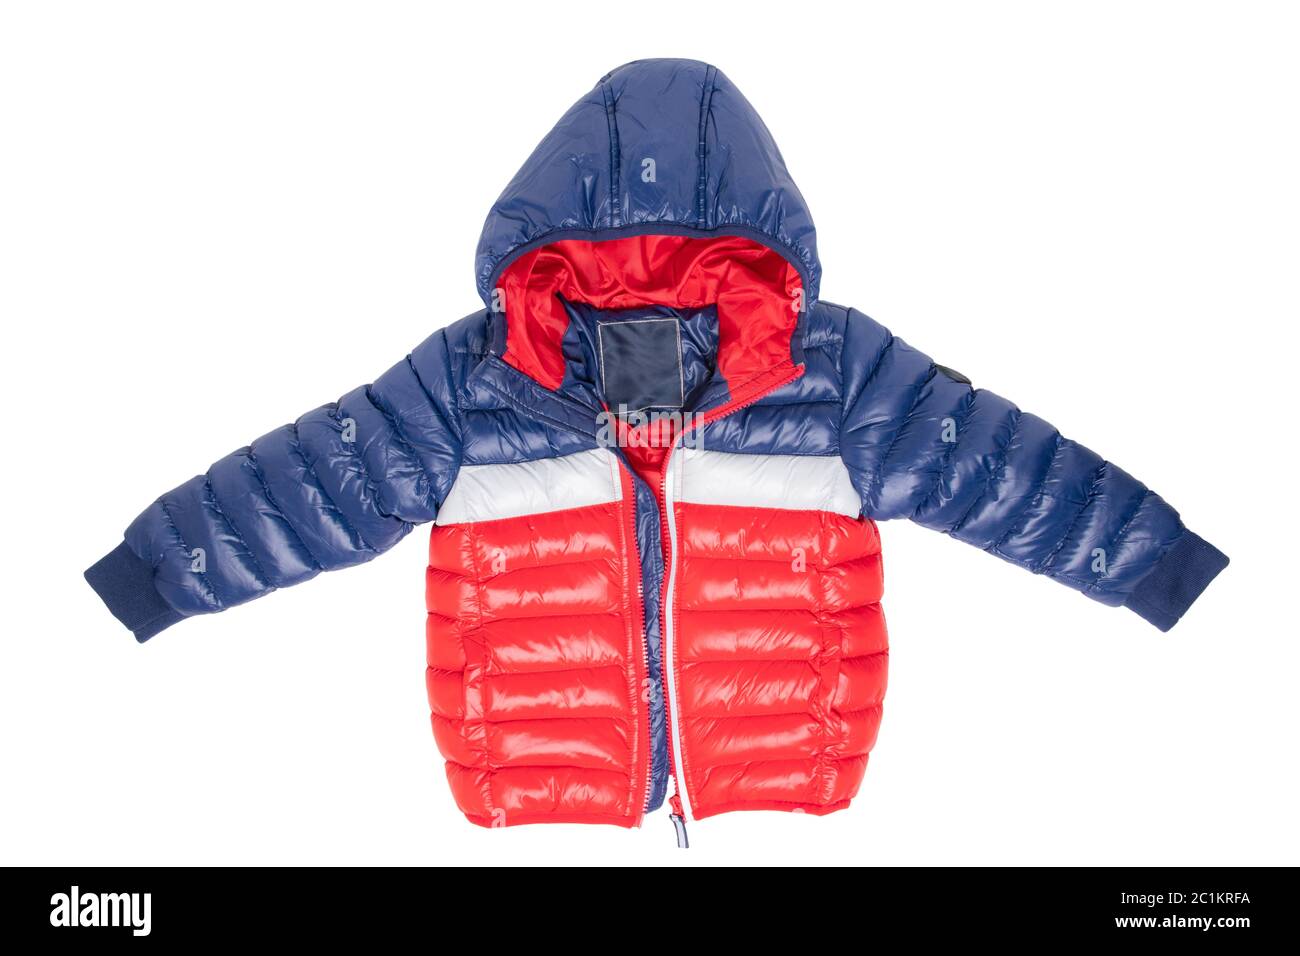 Winterjacke isoliert. Eine stylische blau-rote Warmdown-Jacke mit rotem  Futter für die Kinder ist auf weißem Hintergrund isoliert. Kinderkleidung  mit Kapuze für Frühling und Herbst Stockfotografie - Alamy